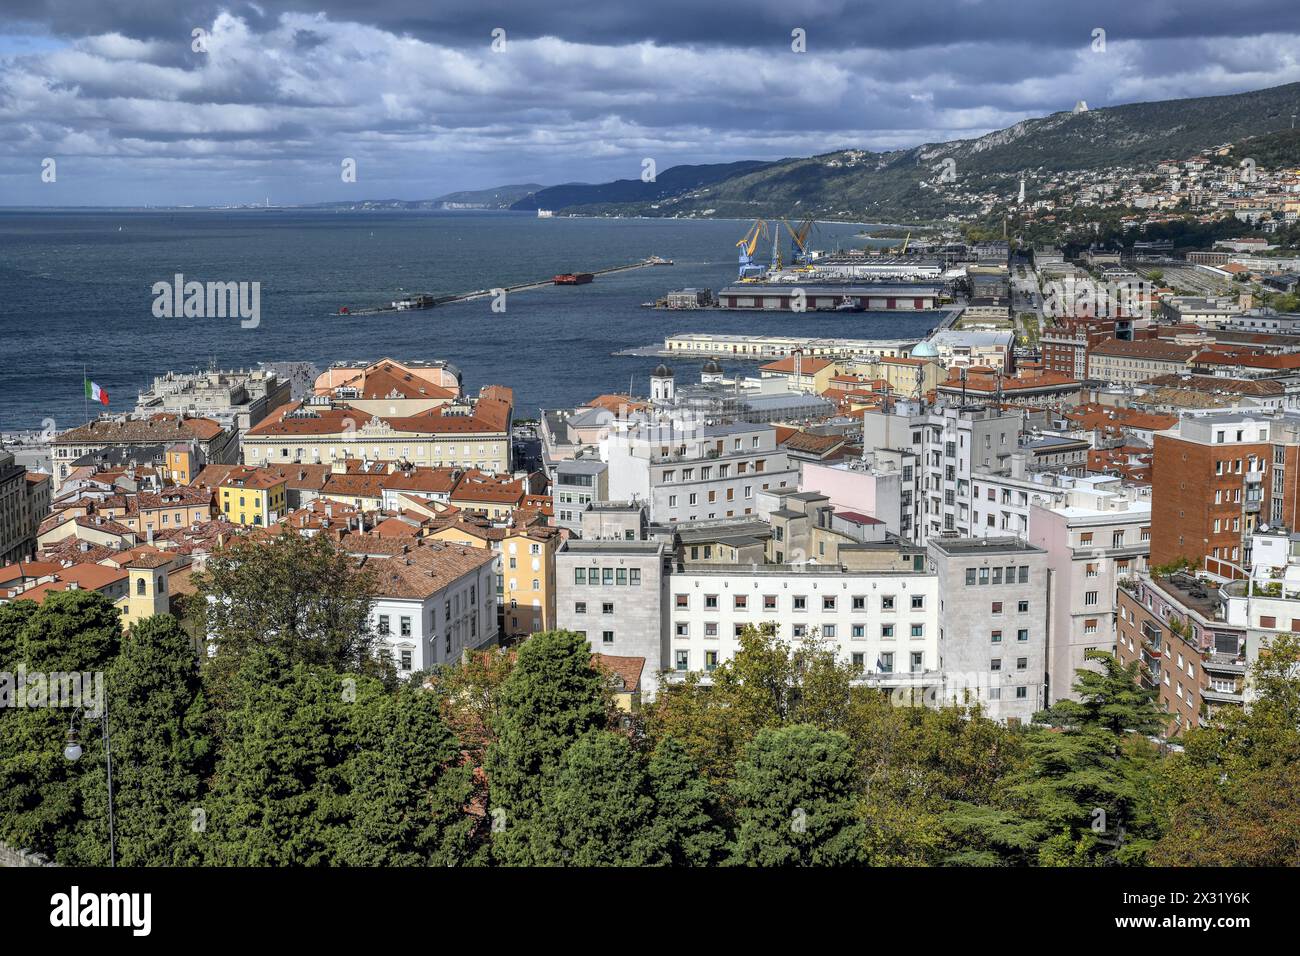 Géographie / voyage, Italie, Frioul, Trieste, vue depuis la colline du château à travers la vieille ville, DROITS-SUPPLÉMENTAIRES-AUTORISATION-INFO-NON-DISPONIBLE Banque D'Images